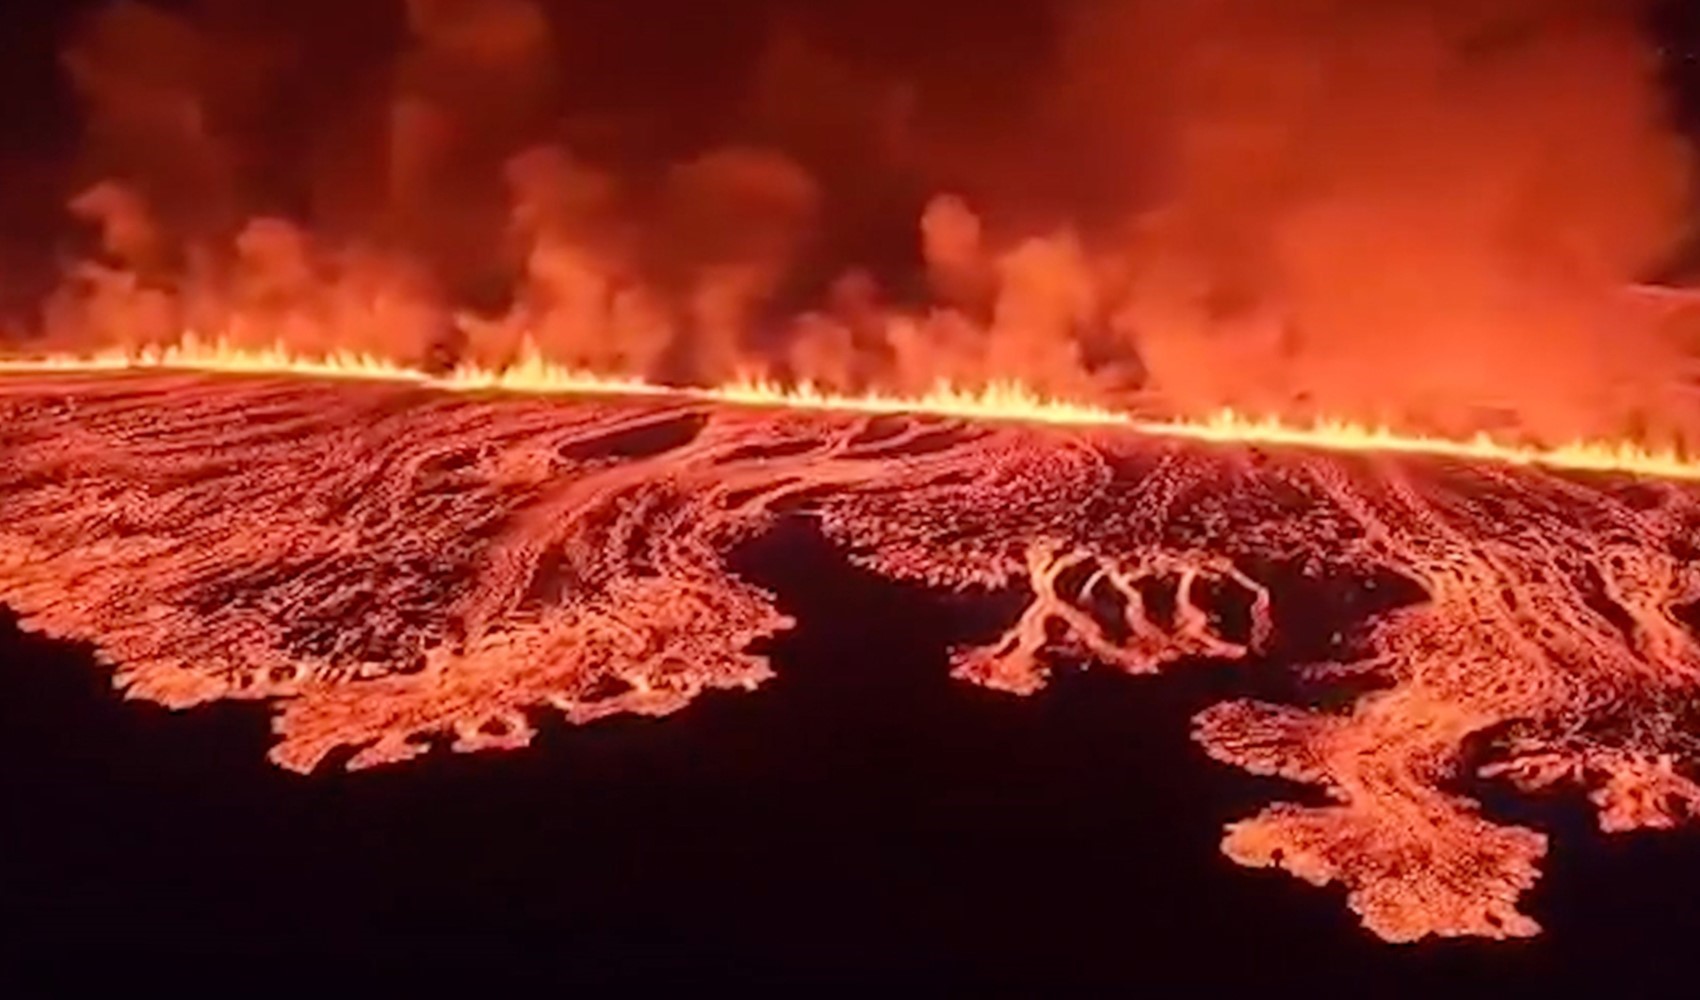 Dünya bu görüntüleri konuşuyor: İzlanda'da 3 ayda 4. yanardağ patlaması!